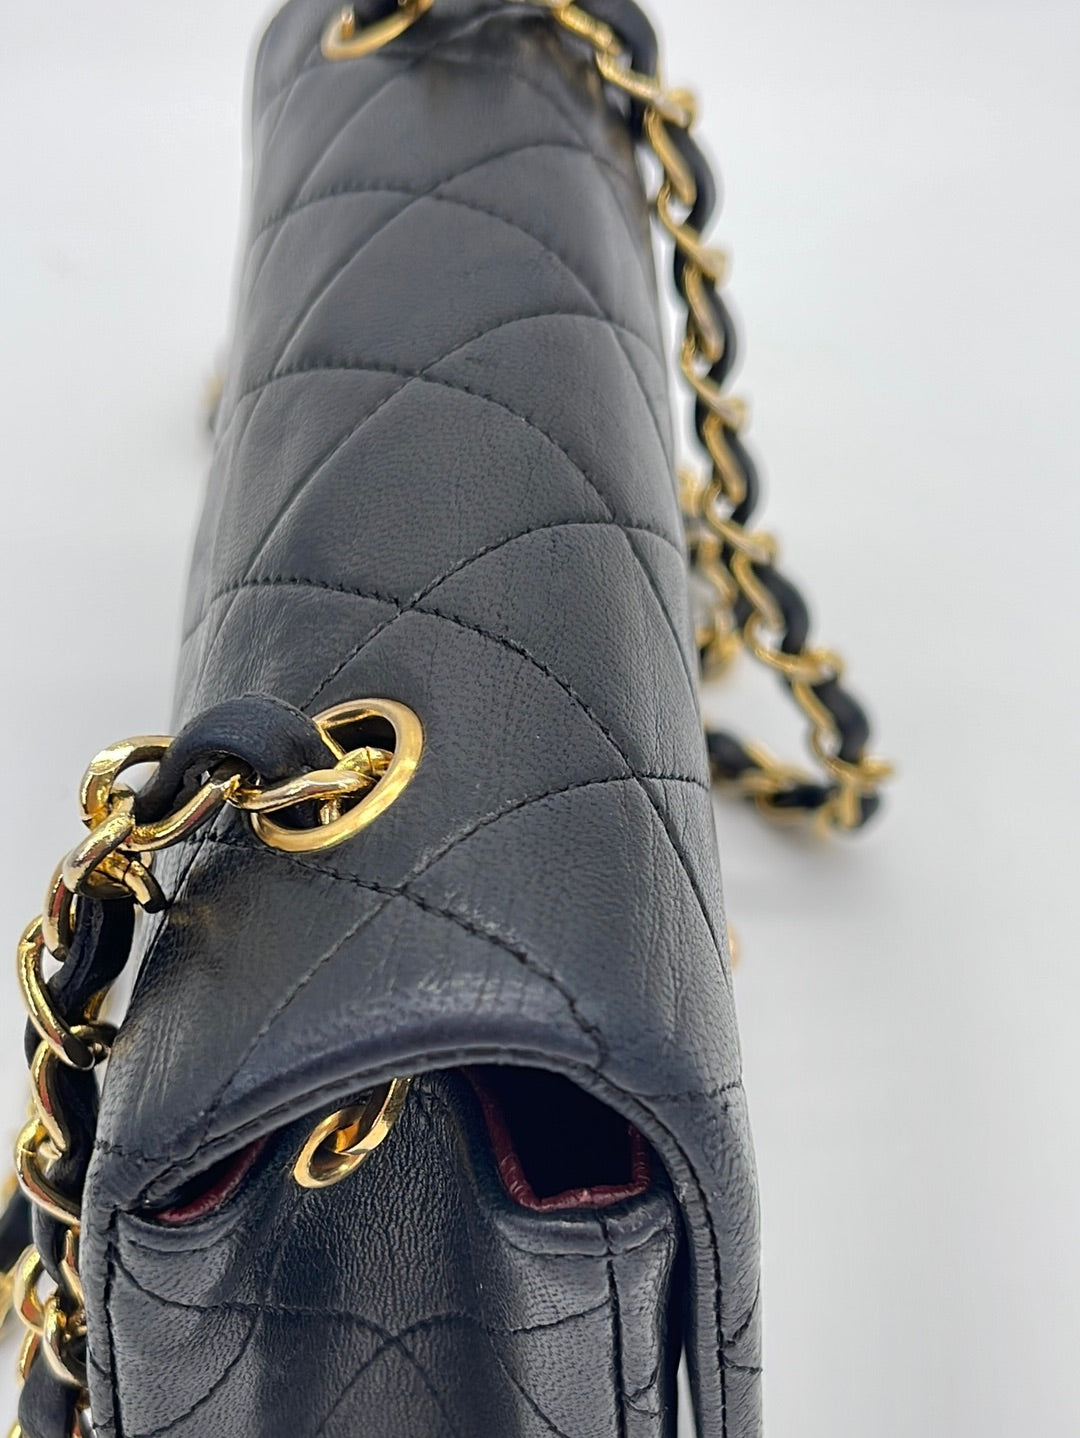 Preloved Chanel Black Quilted Lambskin Full Single Flap Shoulder Bag 1824880 110223